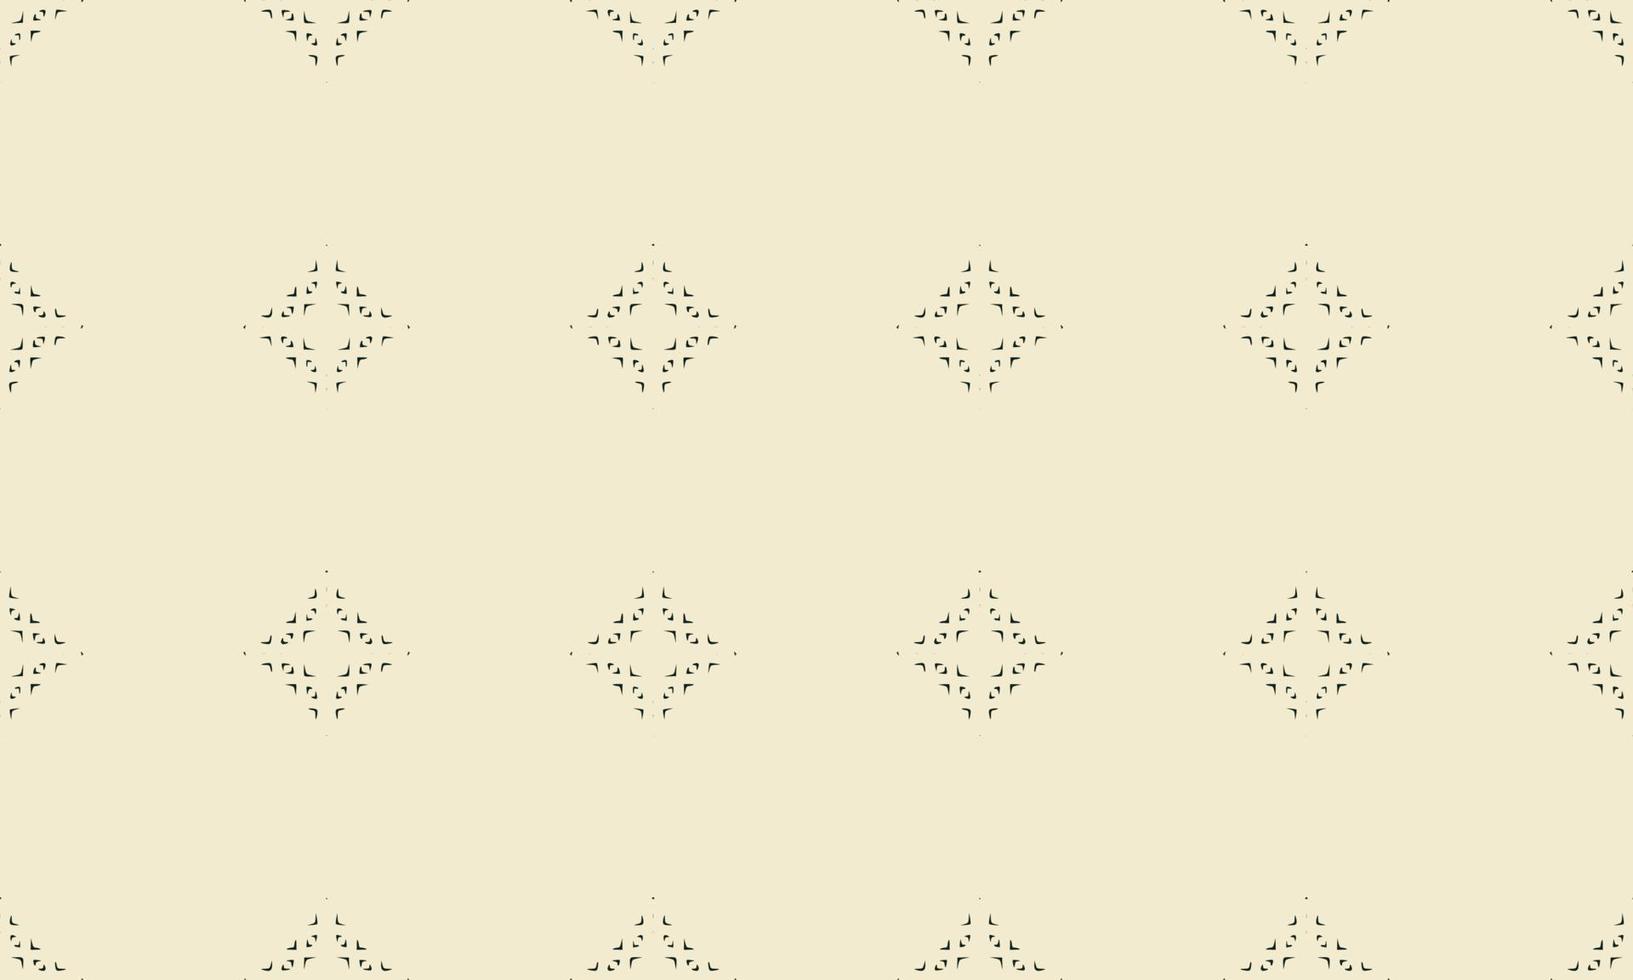 textura de fondo abstracto en estilo ornamental geométrico vector